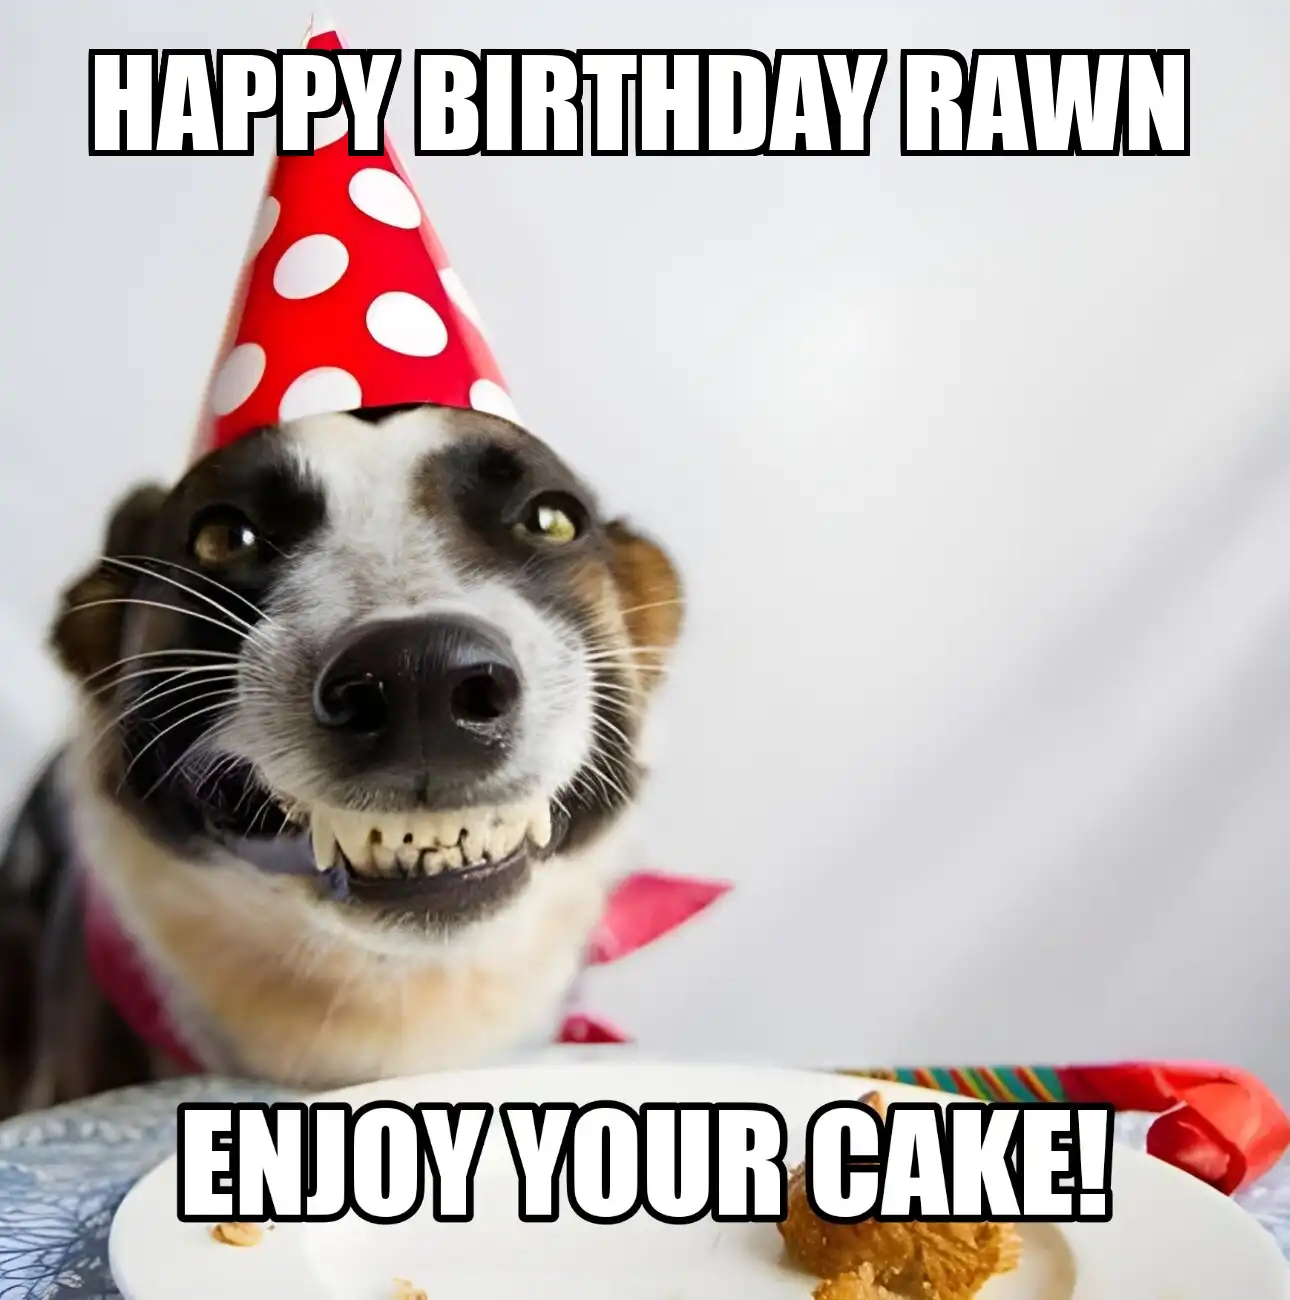 Happy Birthday Rawn Enjoy Your Cake Dog Meme